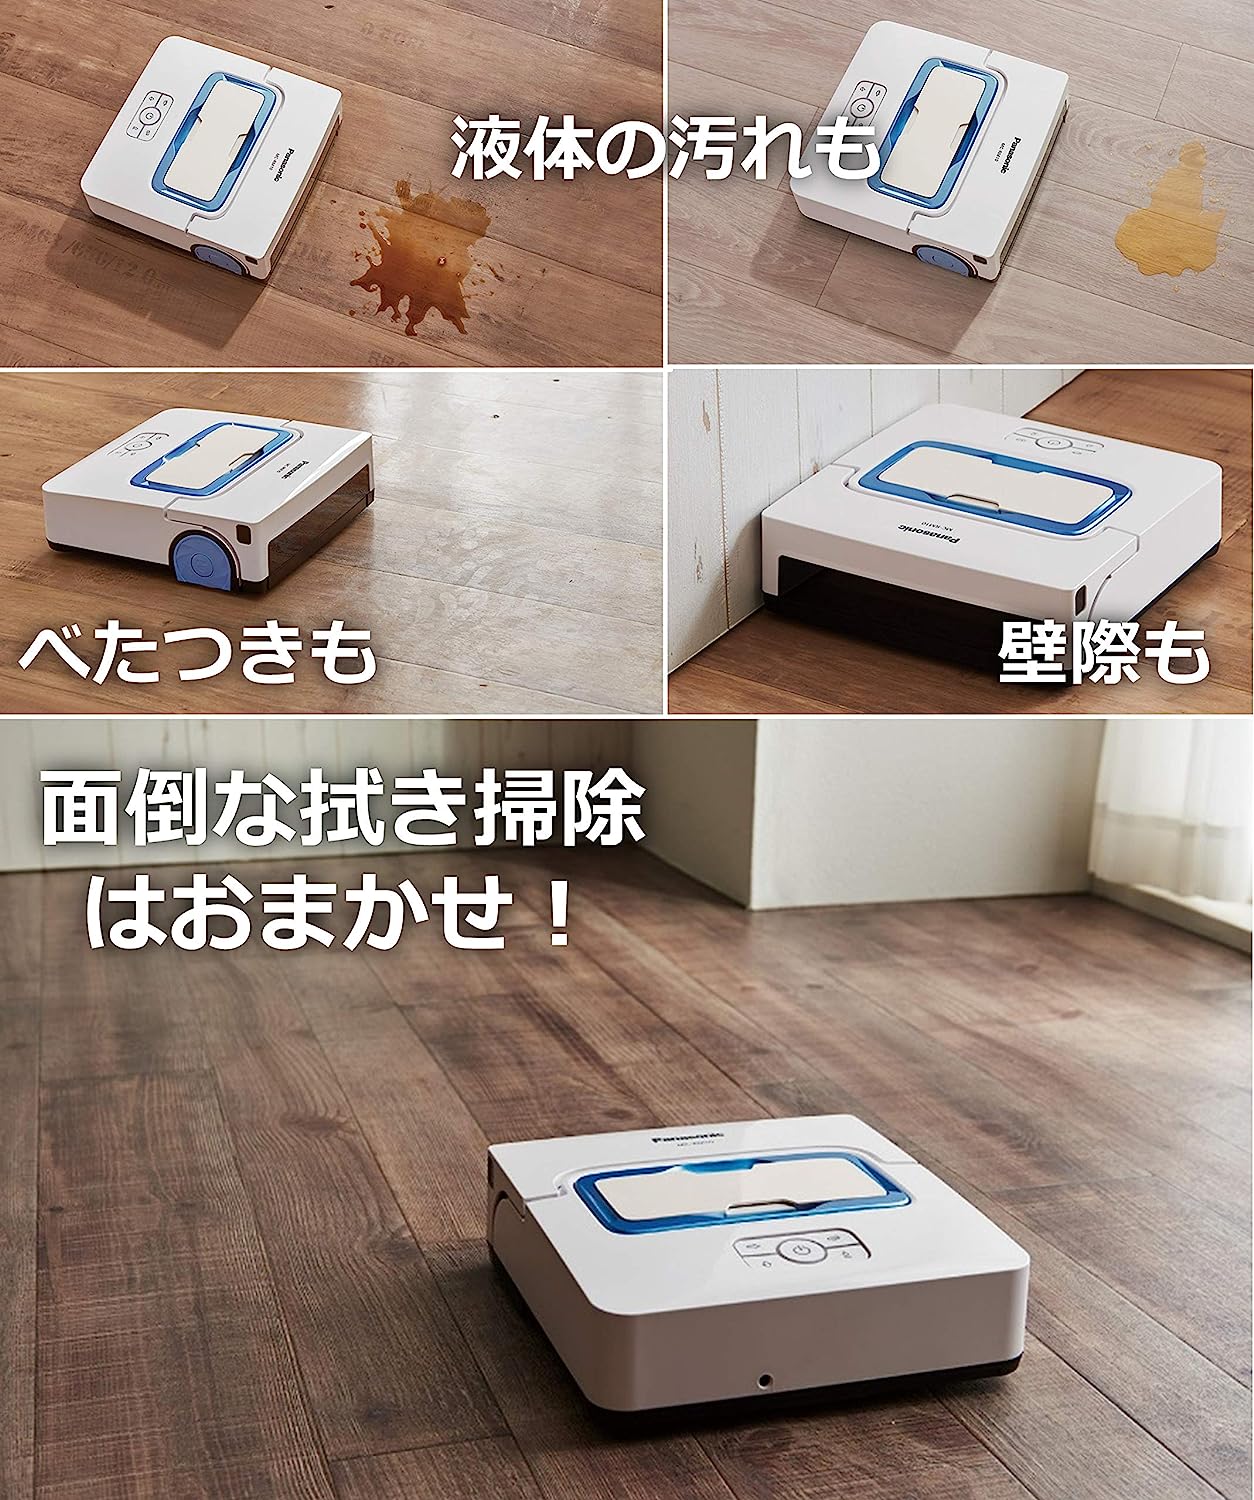 パナソニック 床拭きロボット ロボット掃除機 MC-RM10-W-